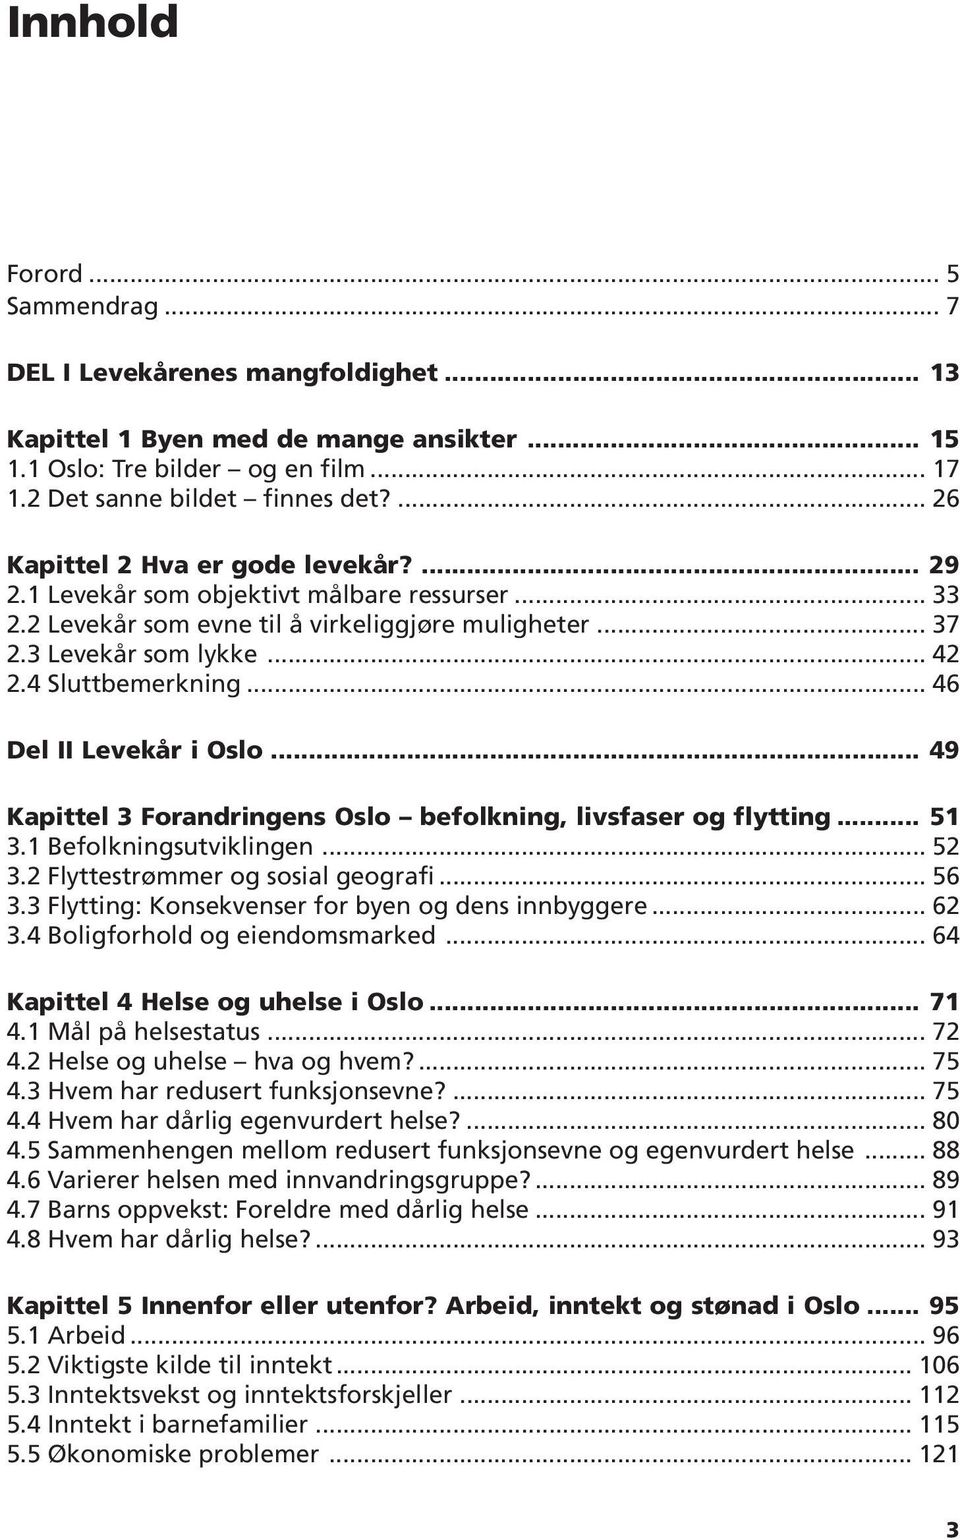 4 Sluttbemerkning... 46 Del II Levekår i Oslo... 49 Kapittel 3 Forandringens Oslo befolkning, livsfaser og flytting... 51 3.1 Befolkningsutviklingen... 52 3.2 Flyttestrømmer og sosial geografi... 56 3.